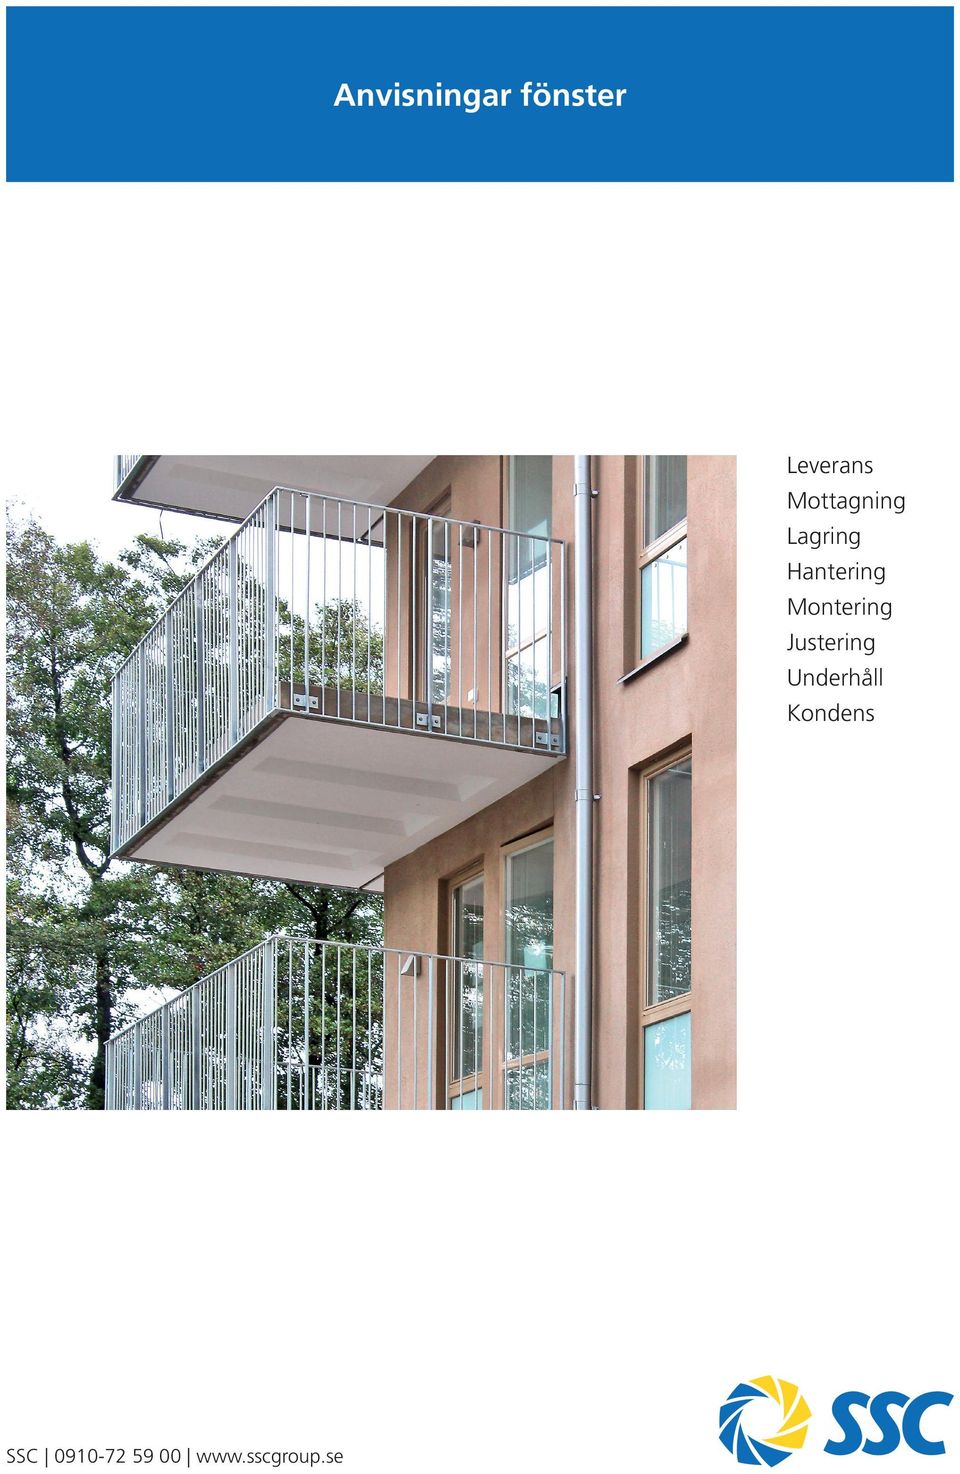 Anvisningar fönster. Leverans Mottagning Lagring Hantering Montering  Justering Underhåll Kondens. SSC - PDF Free Download